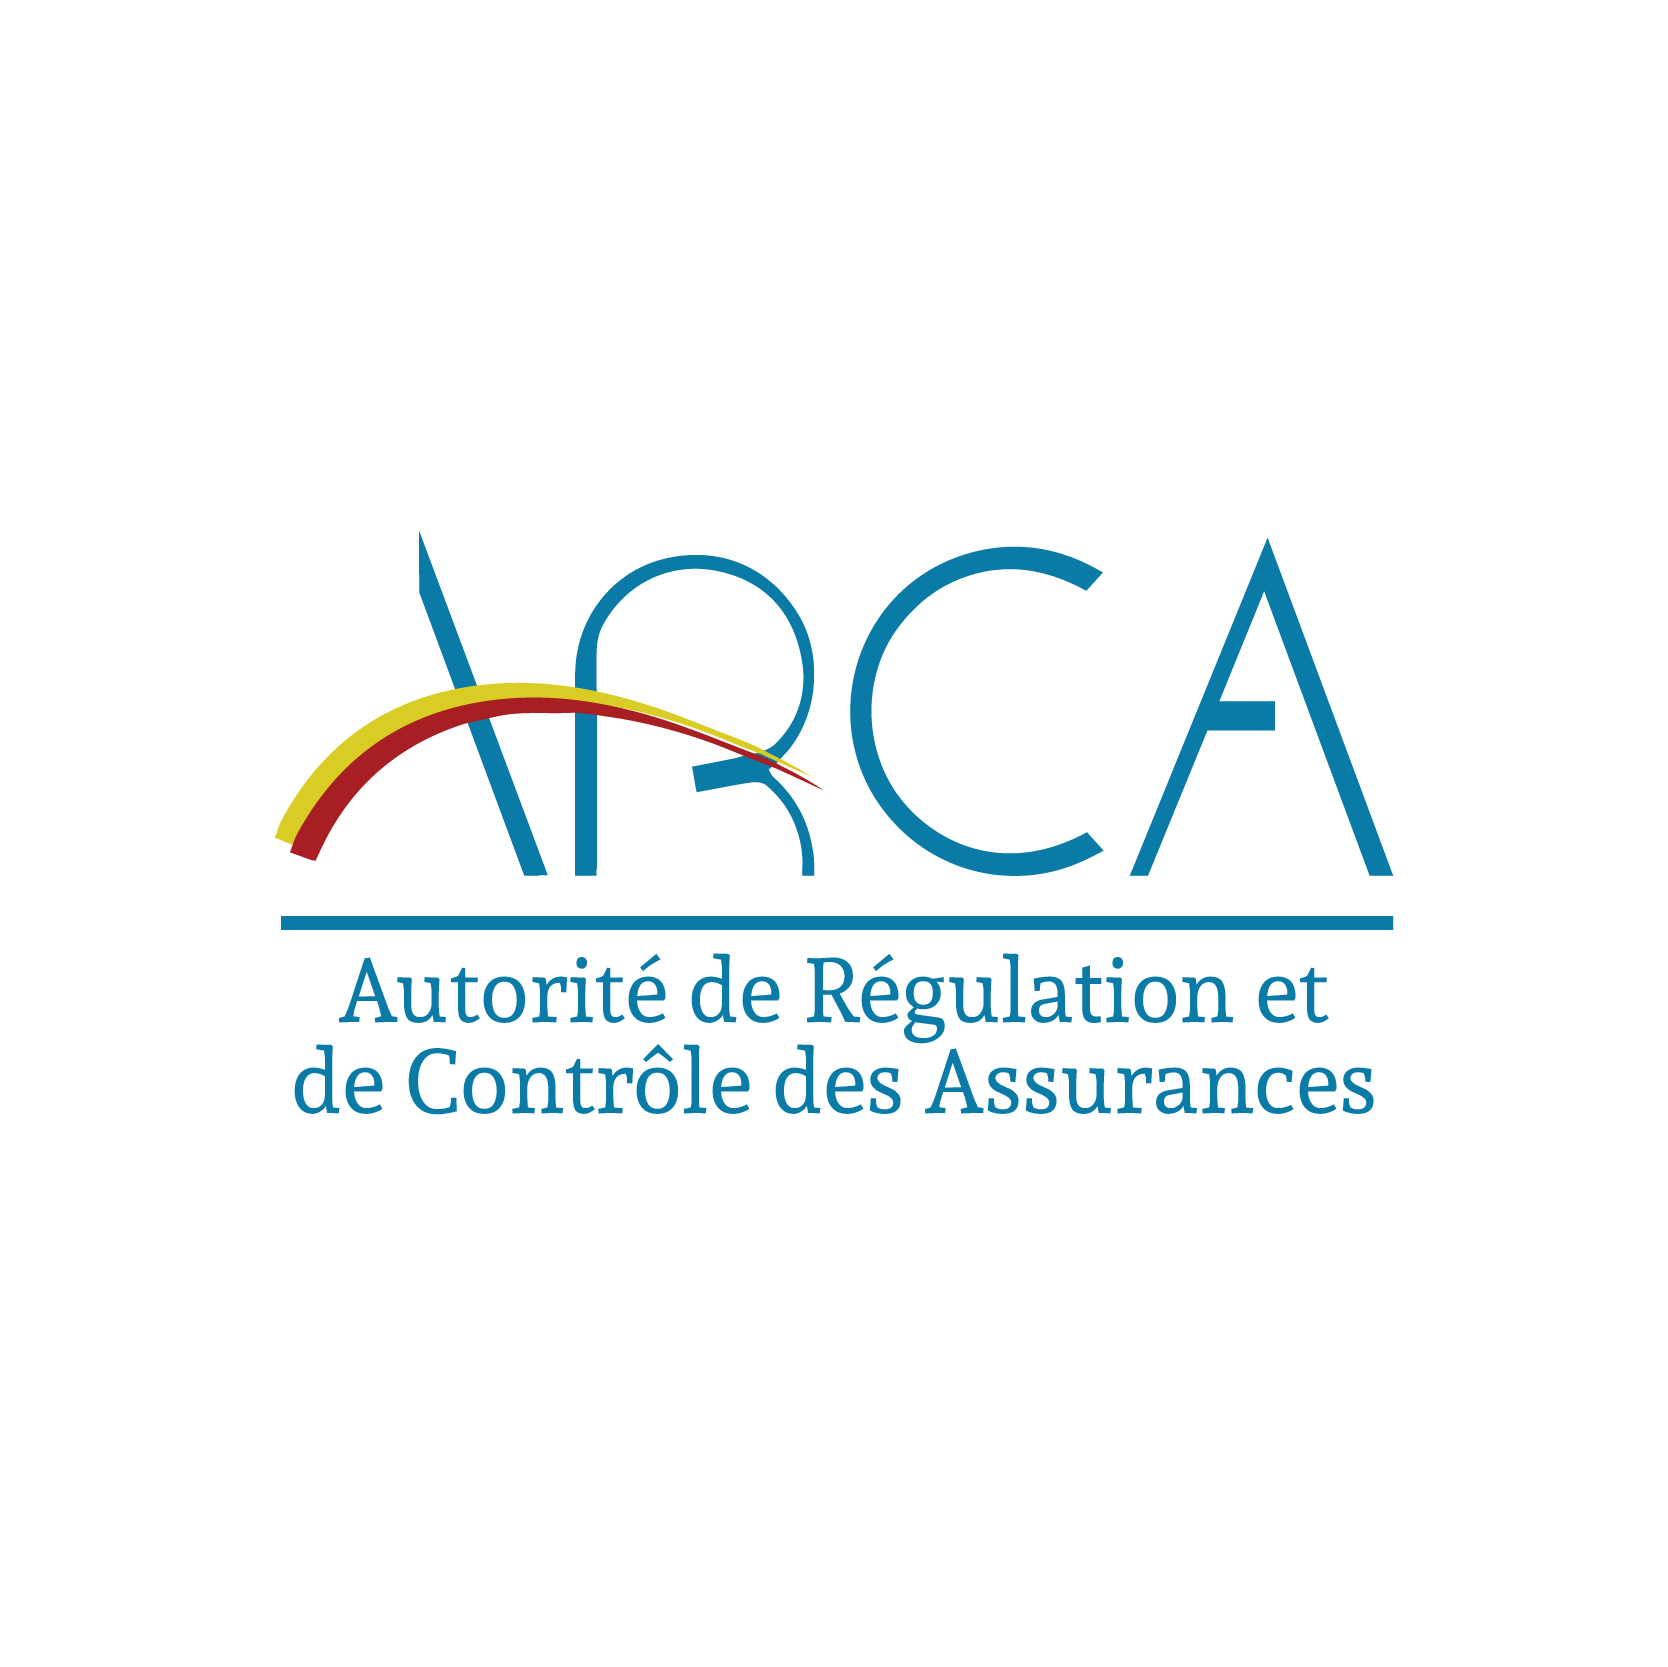 L’ARCA est l’Autorité de Régulation et de Contrôle des Assurances en République Démocratique du Congo (https://t.co/8qZW8c7cNI)